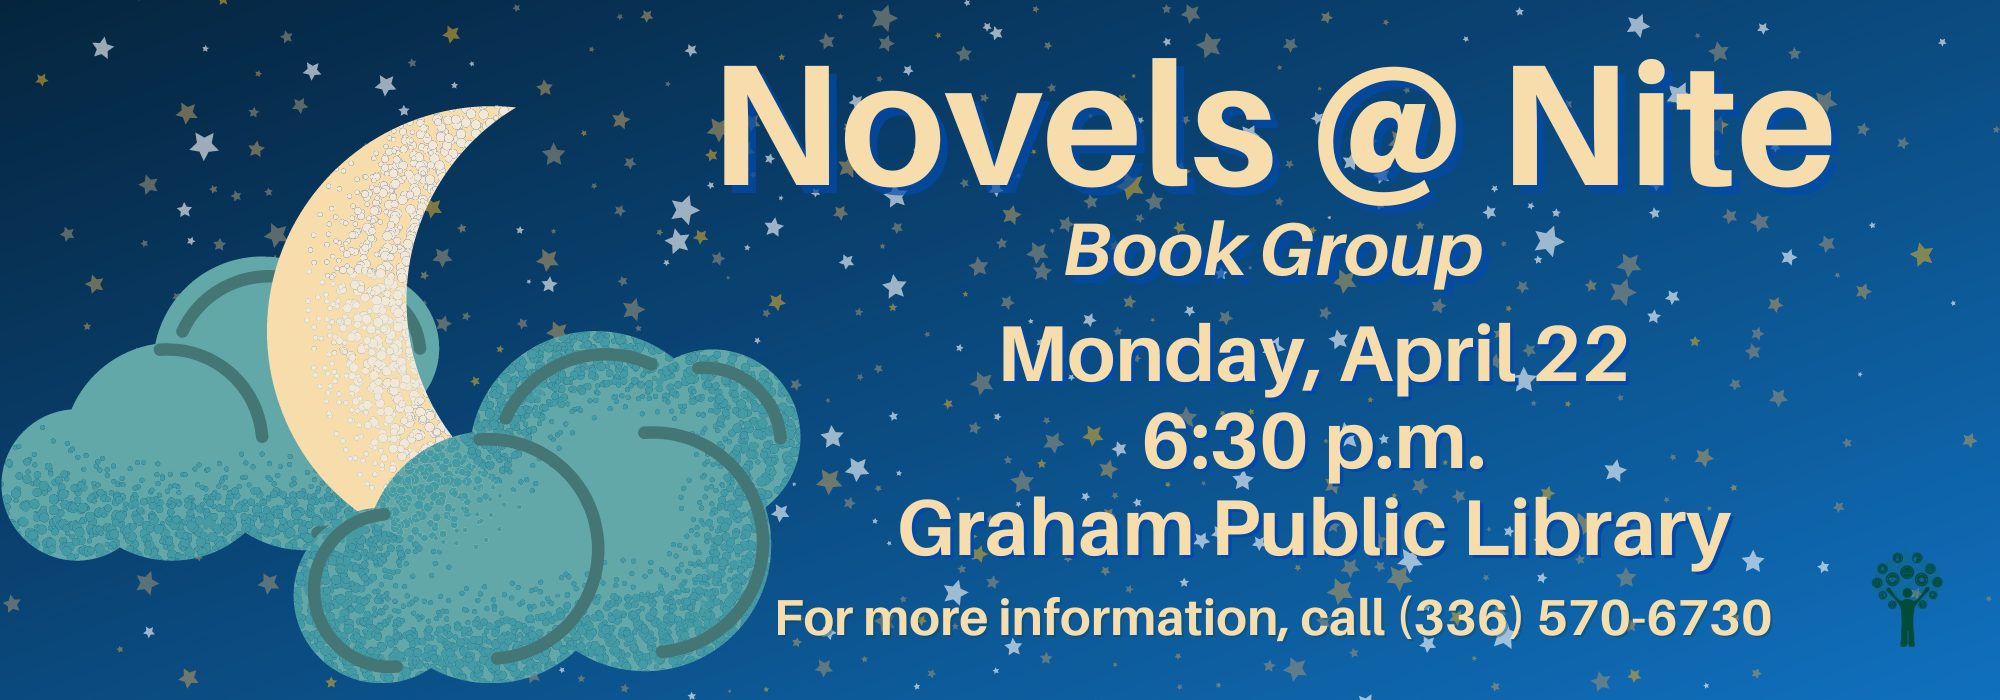 4.22 at 630 pm - Novels @ Nite at Graham